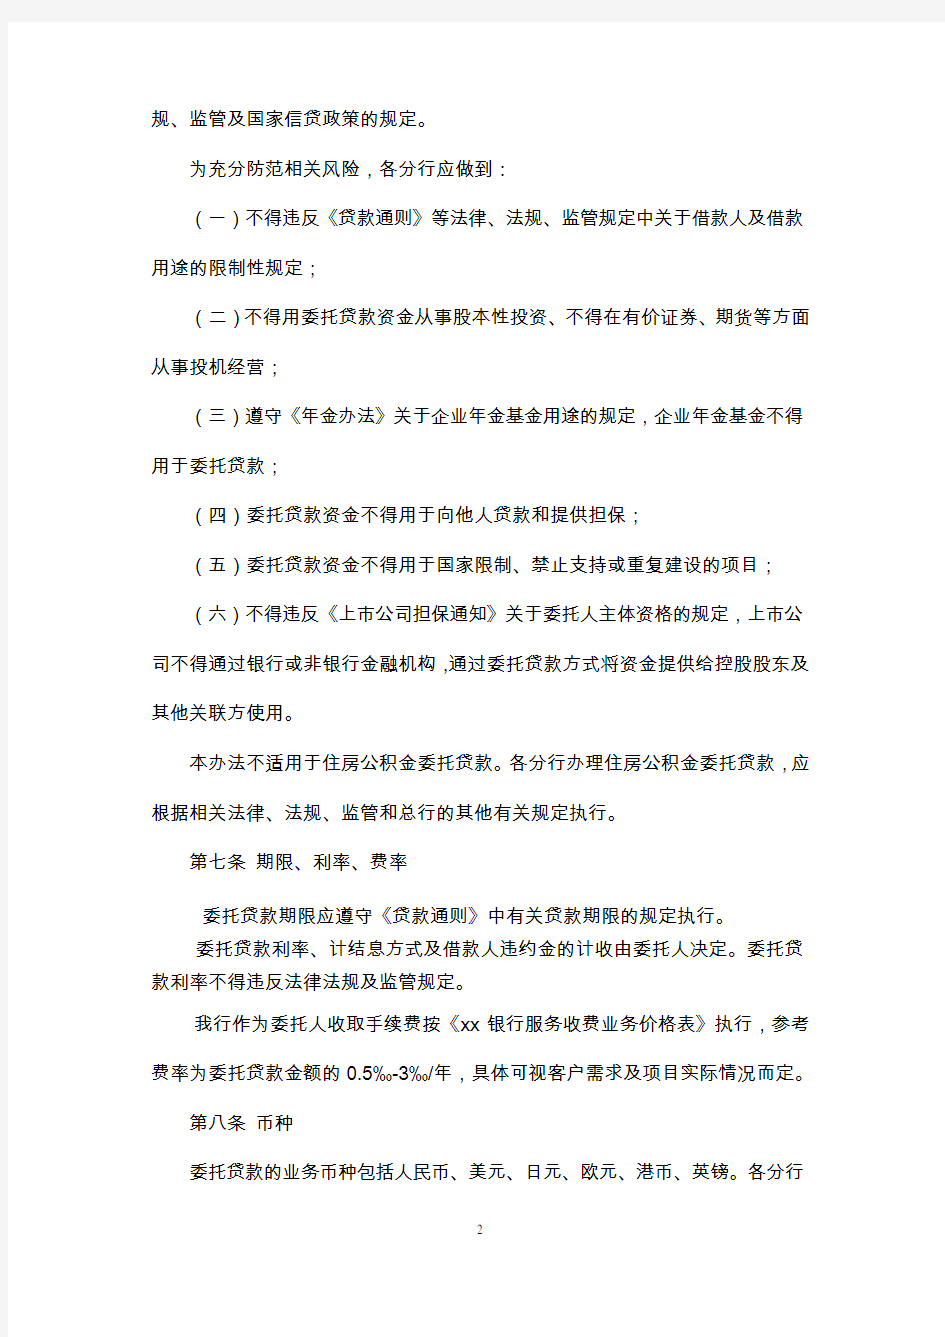 中国银行股份有限公司委托贷款管理办法(2011年版)